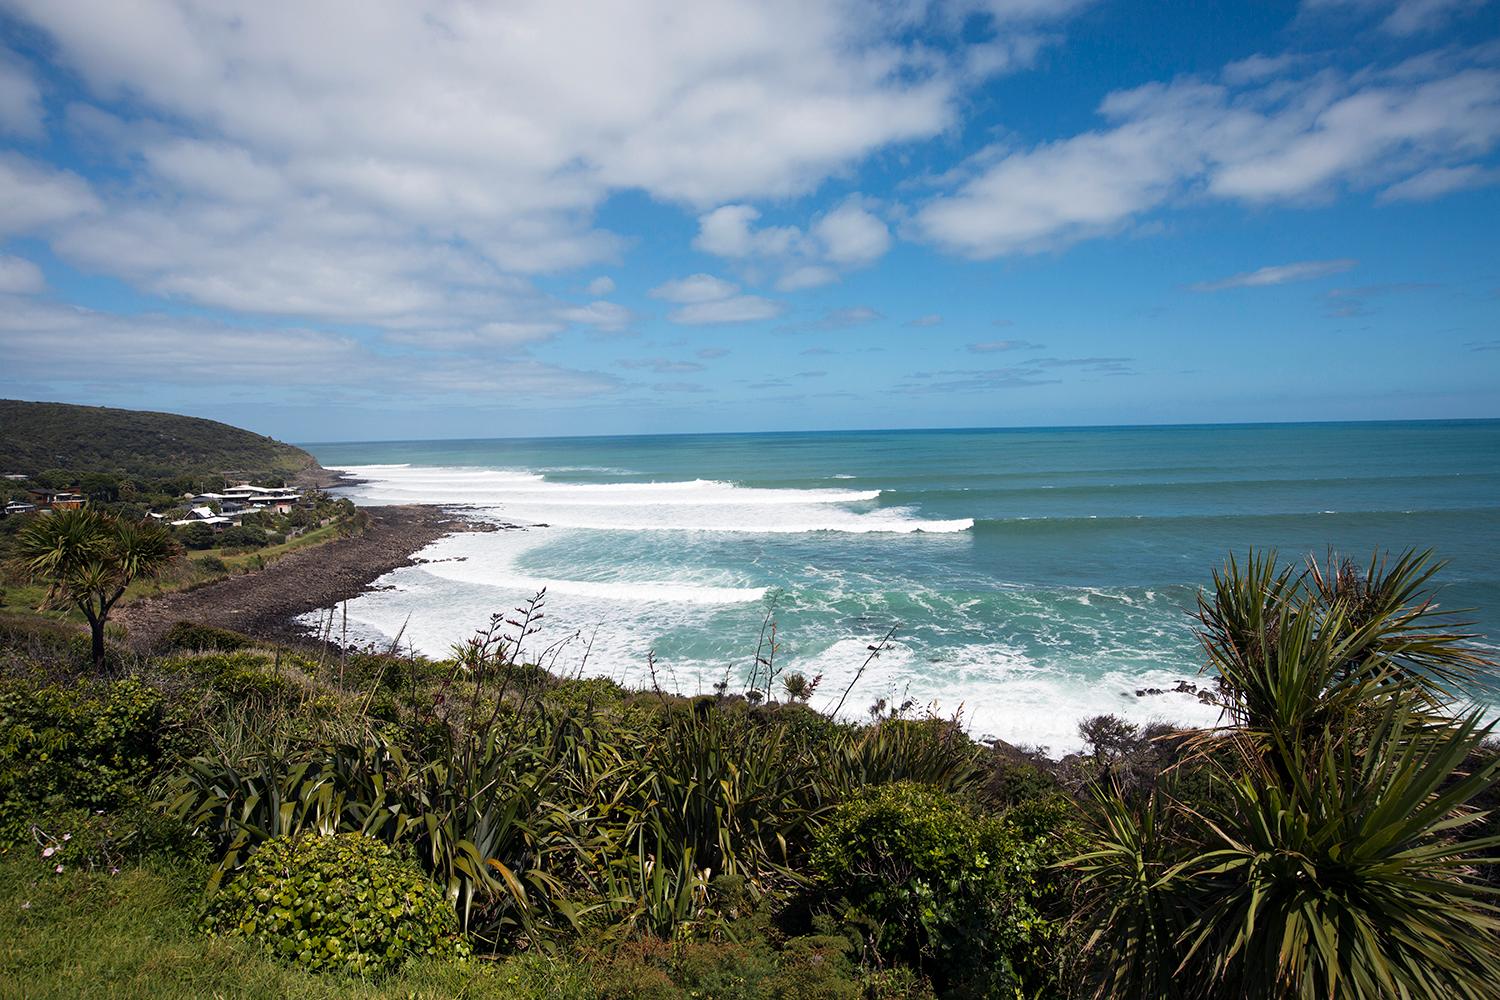 Alla turister som åker in i Nya Zeeland måste betala en turistskatt. Här är Whale Bay norr om Auckland.